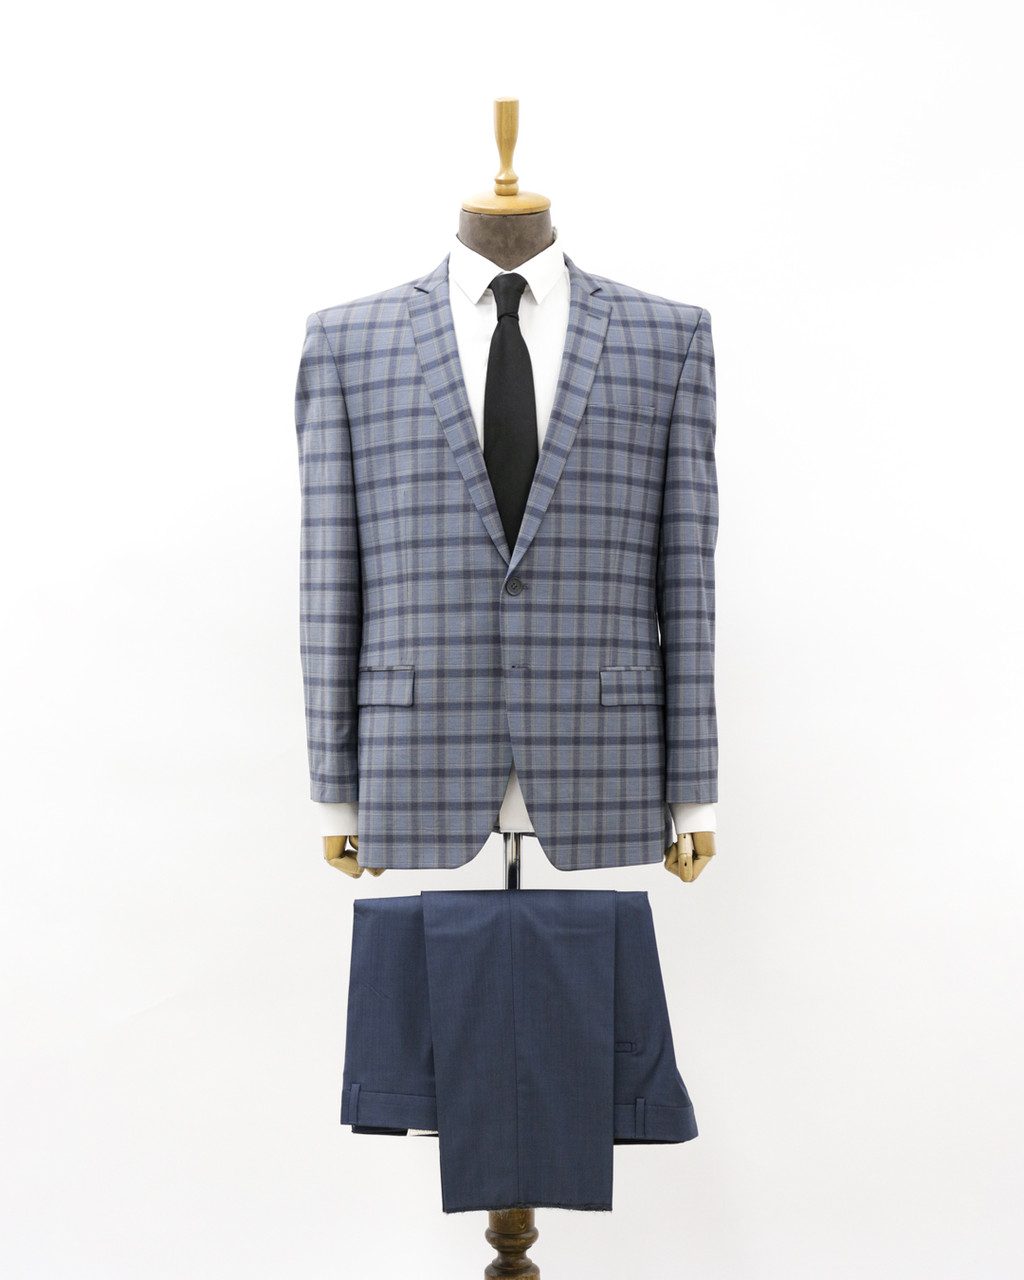 Мужской деловой костюм «UM&H 34723452» серый, синий, фото 1